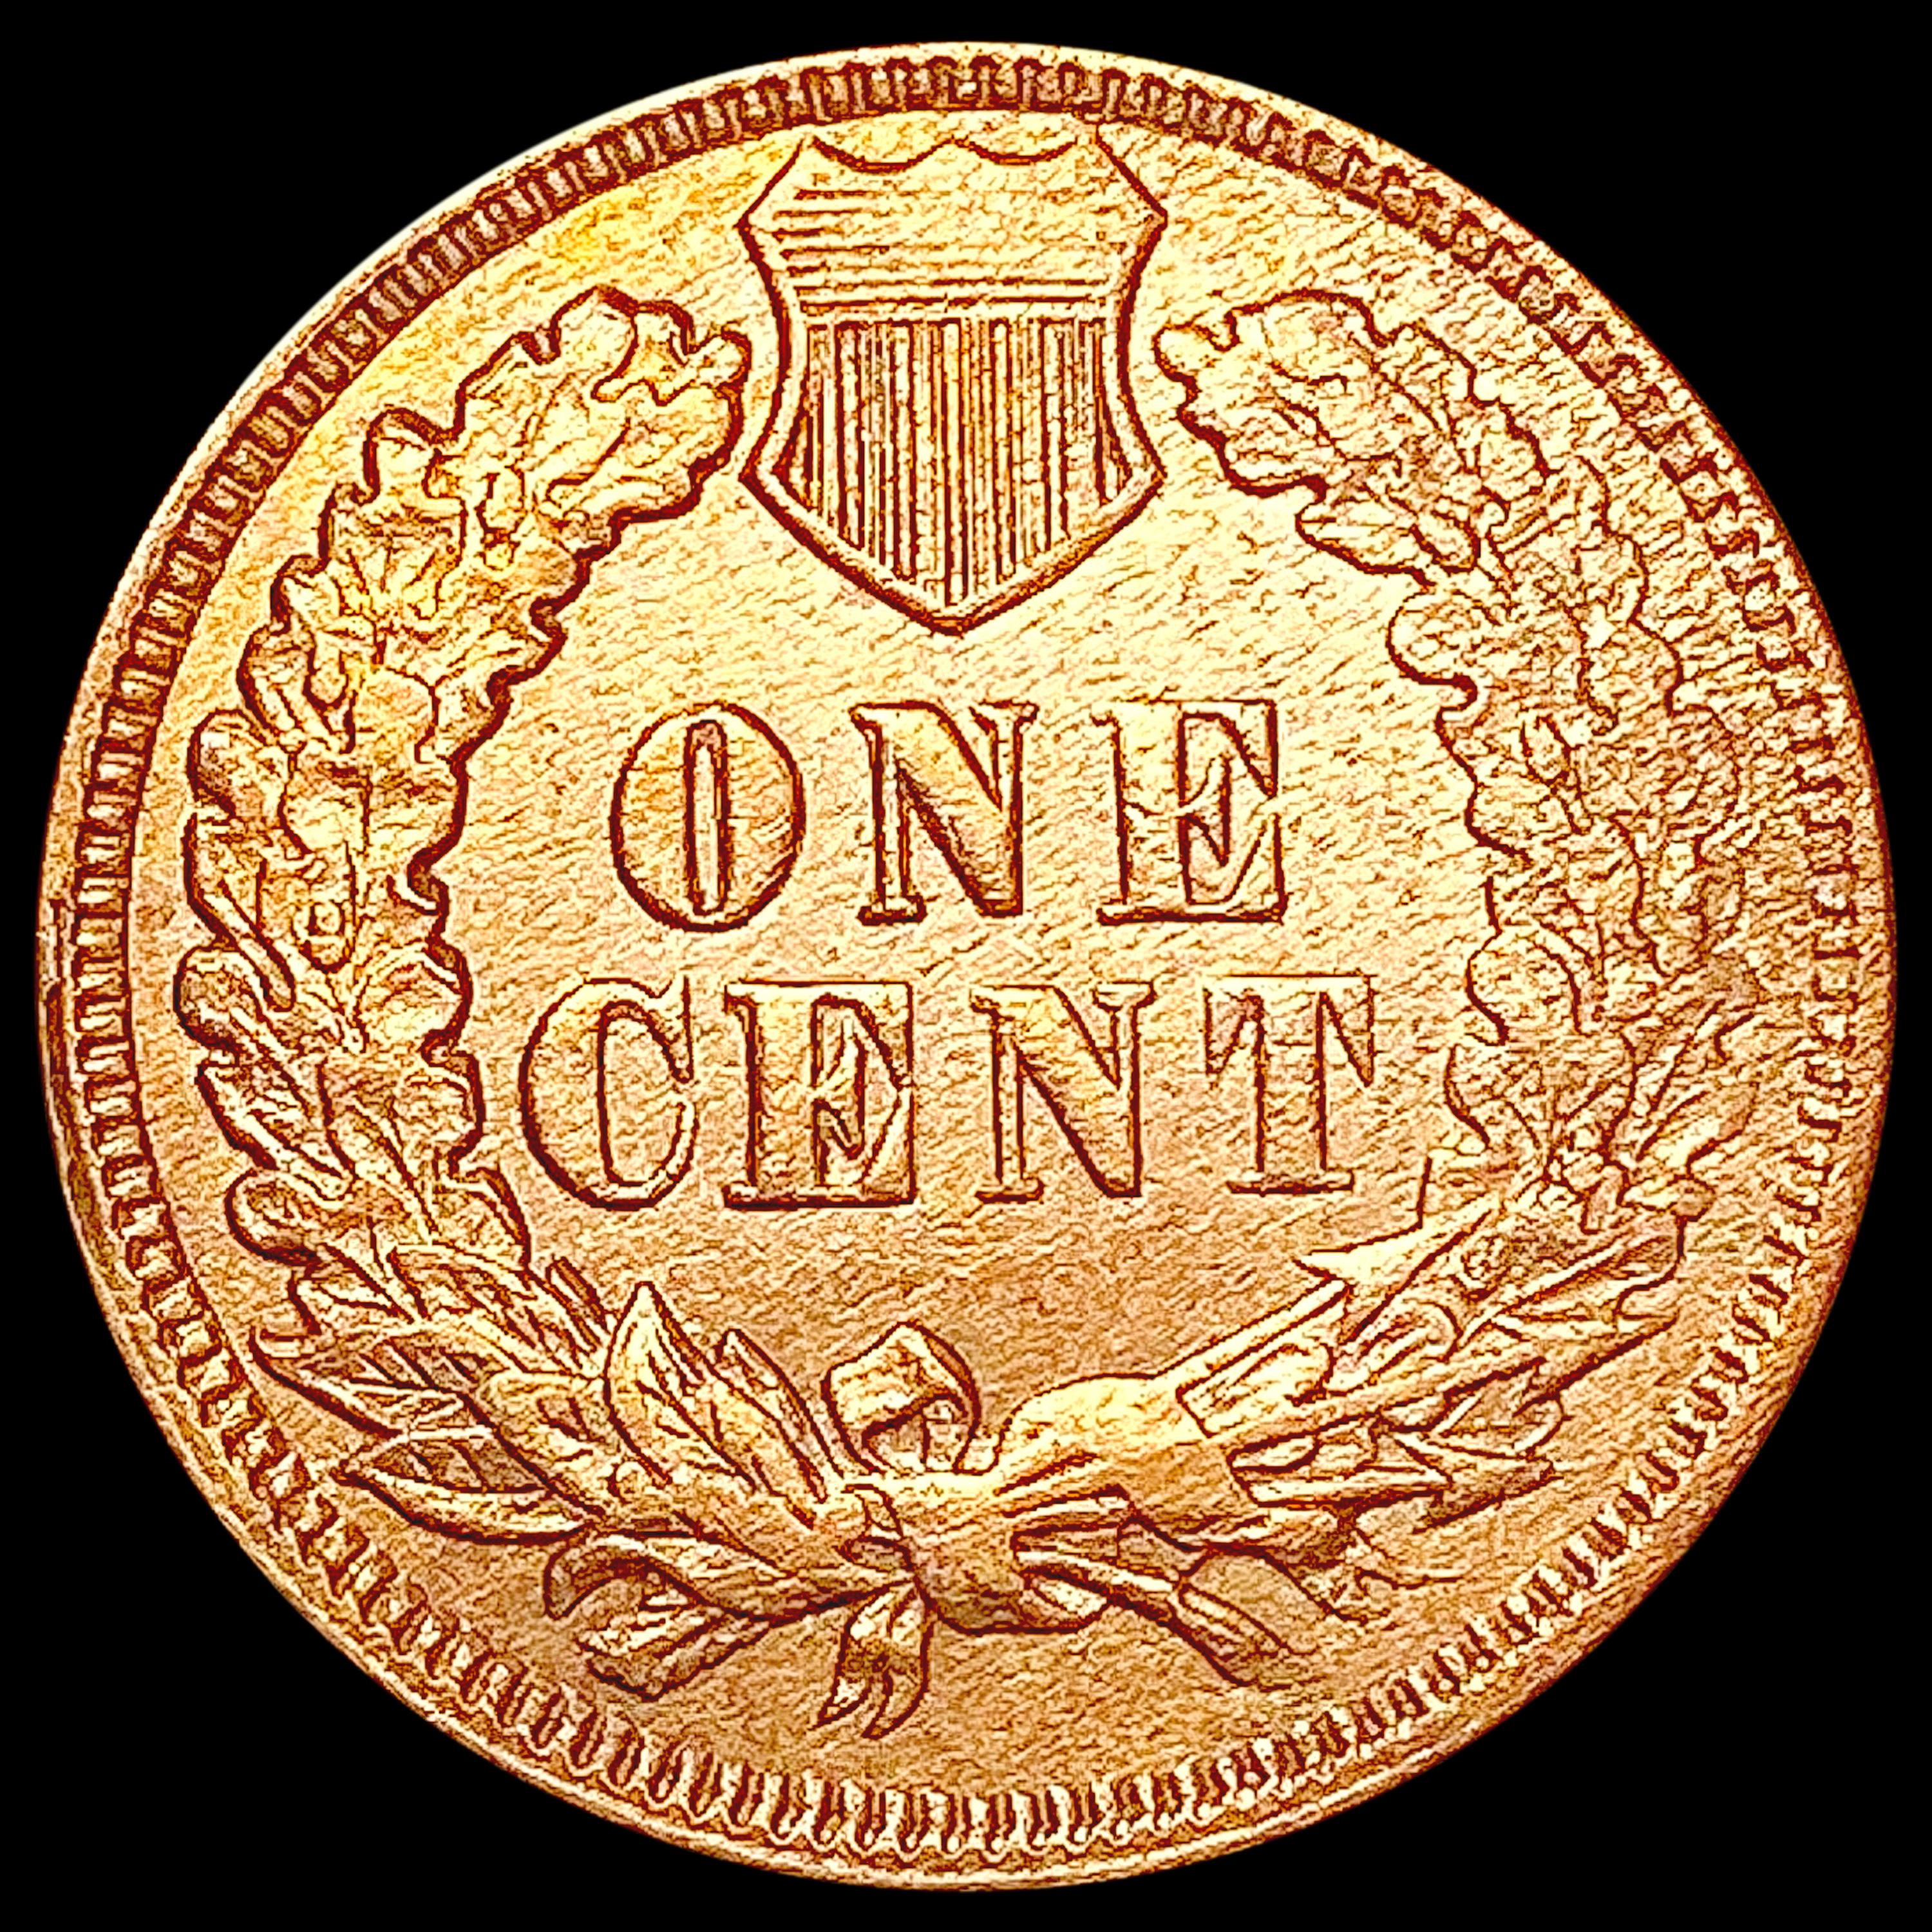 1873 Indian Head Cent CHOICE AU